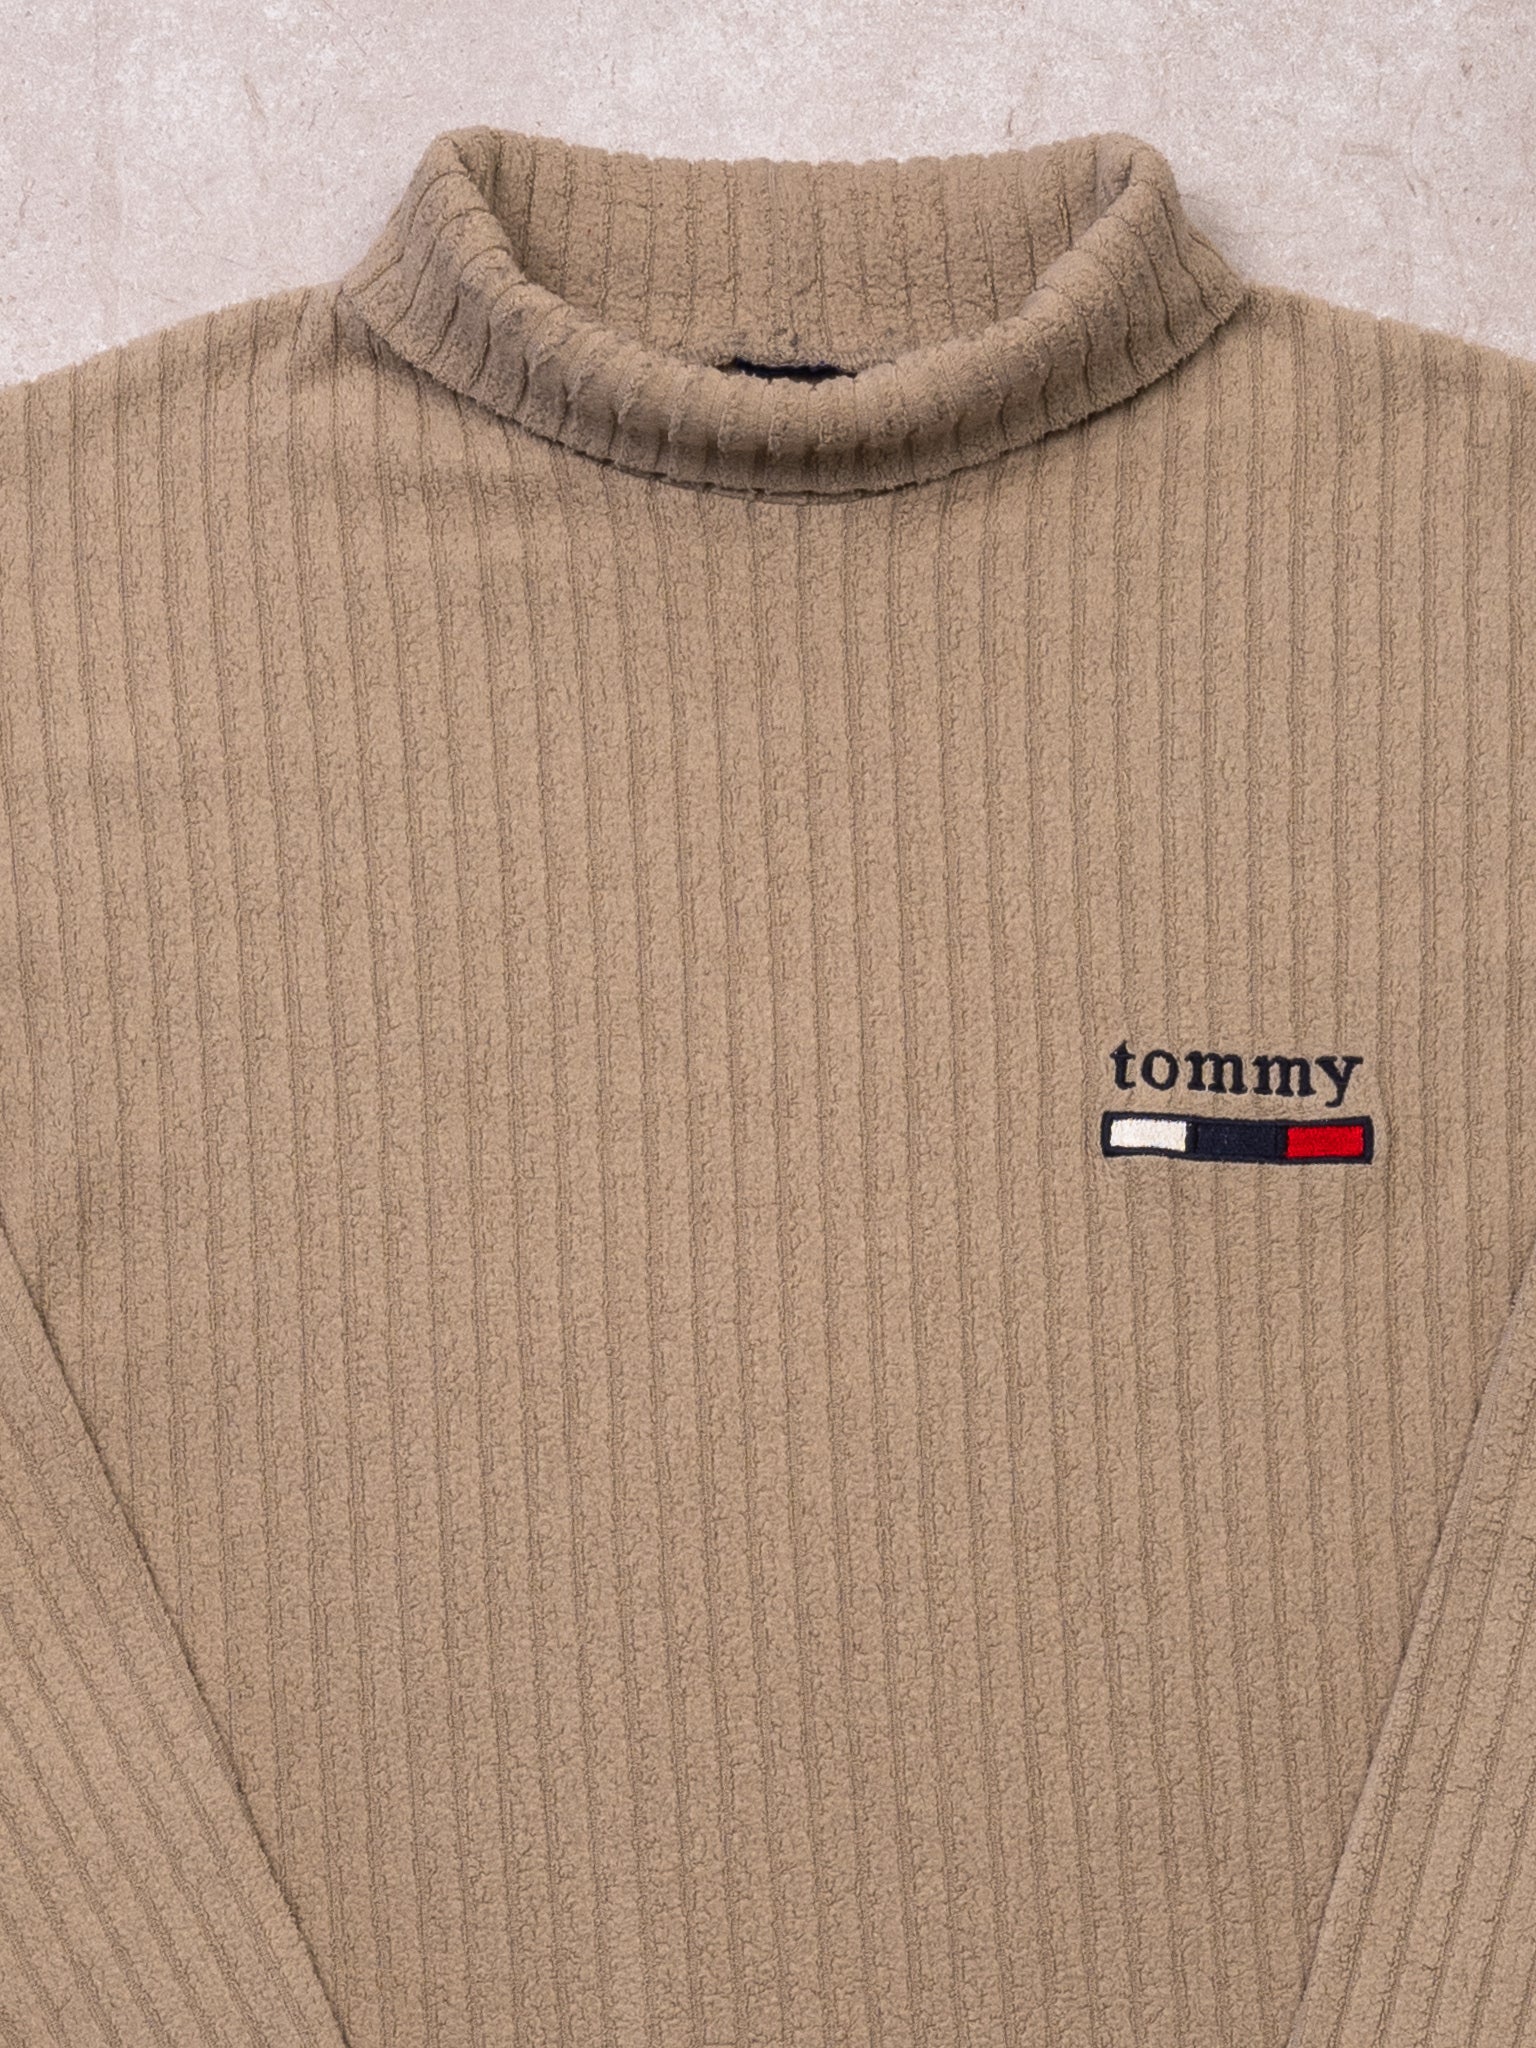 Vintage 90s Beige Fleece Tommy Turtleneck (L)